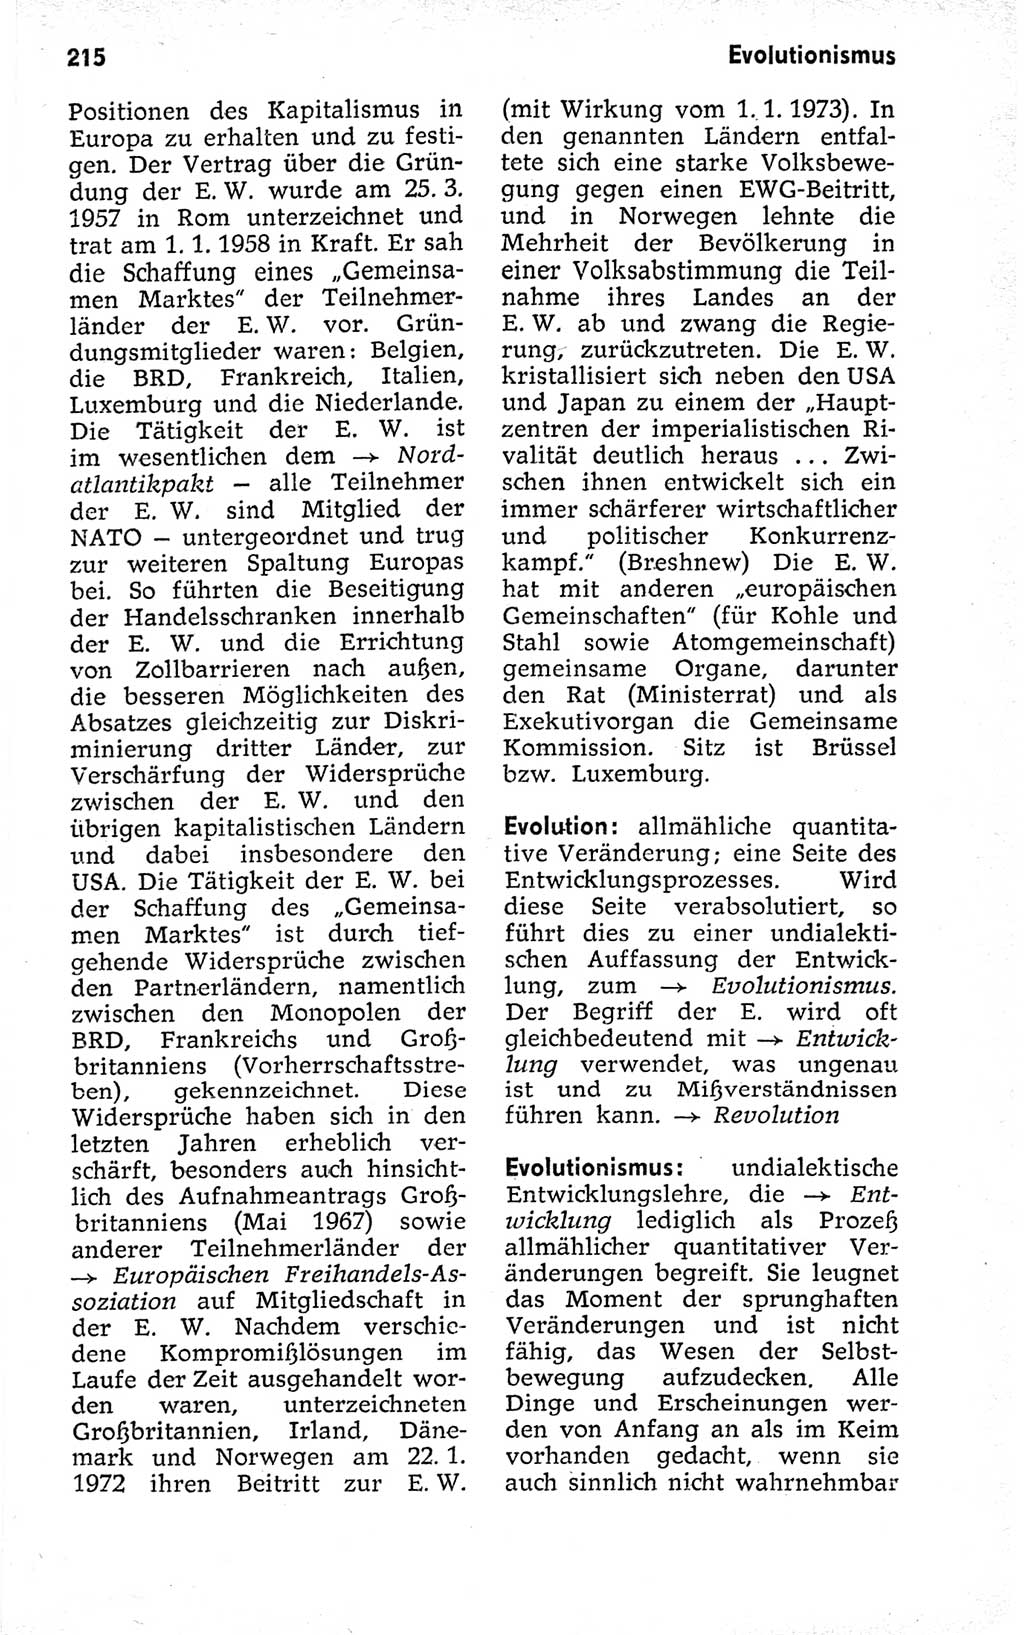 Kleines politisches Wörterbuch [Deutsche Demokratische Republik (DDR)] 1973, Seite 215 (Kl. pol. Wb. DDR 1973, S. 215)